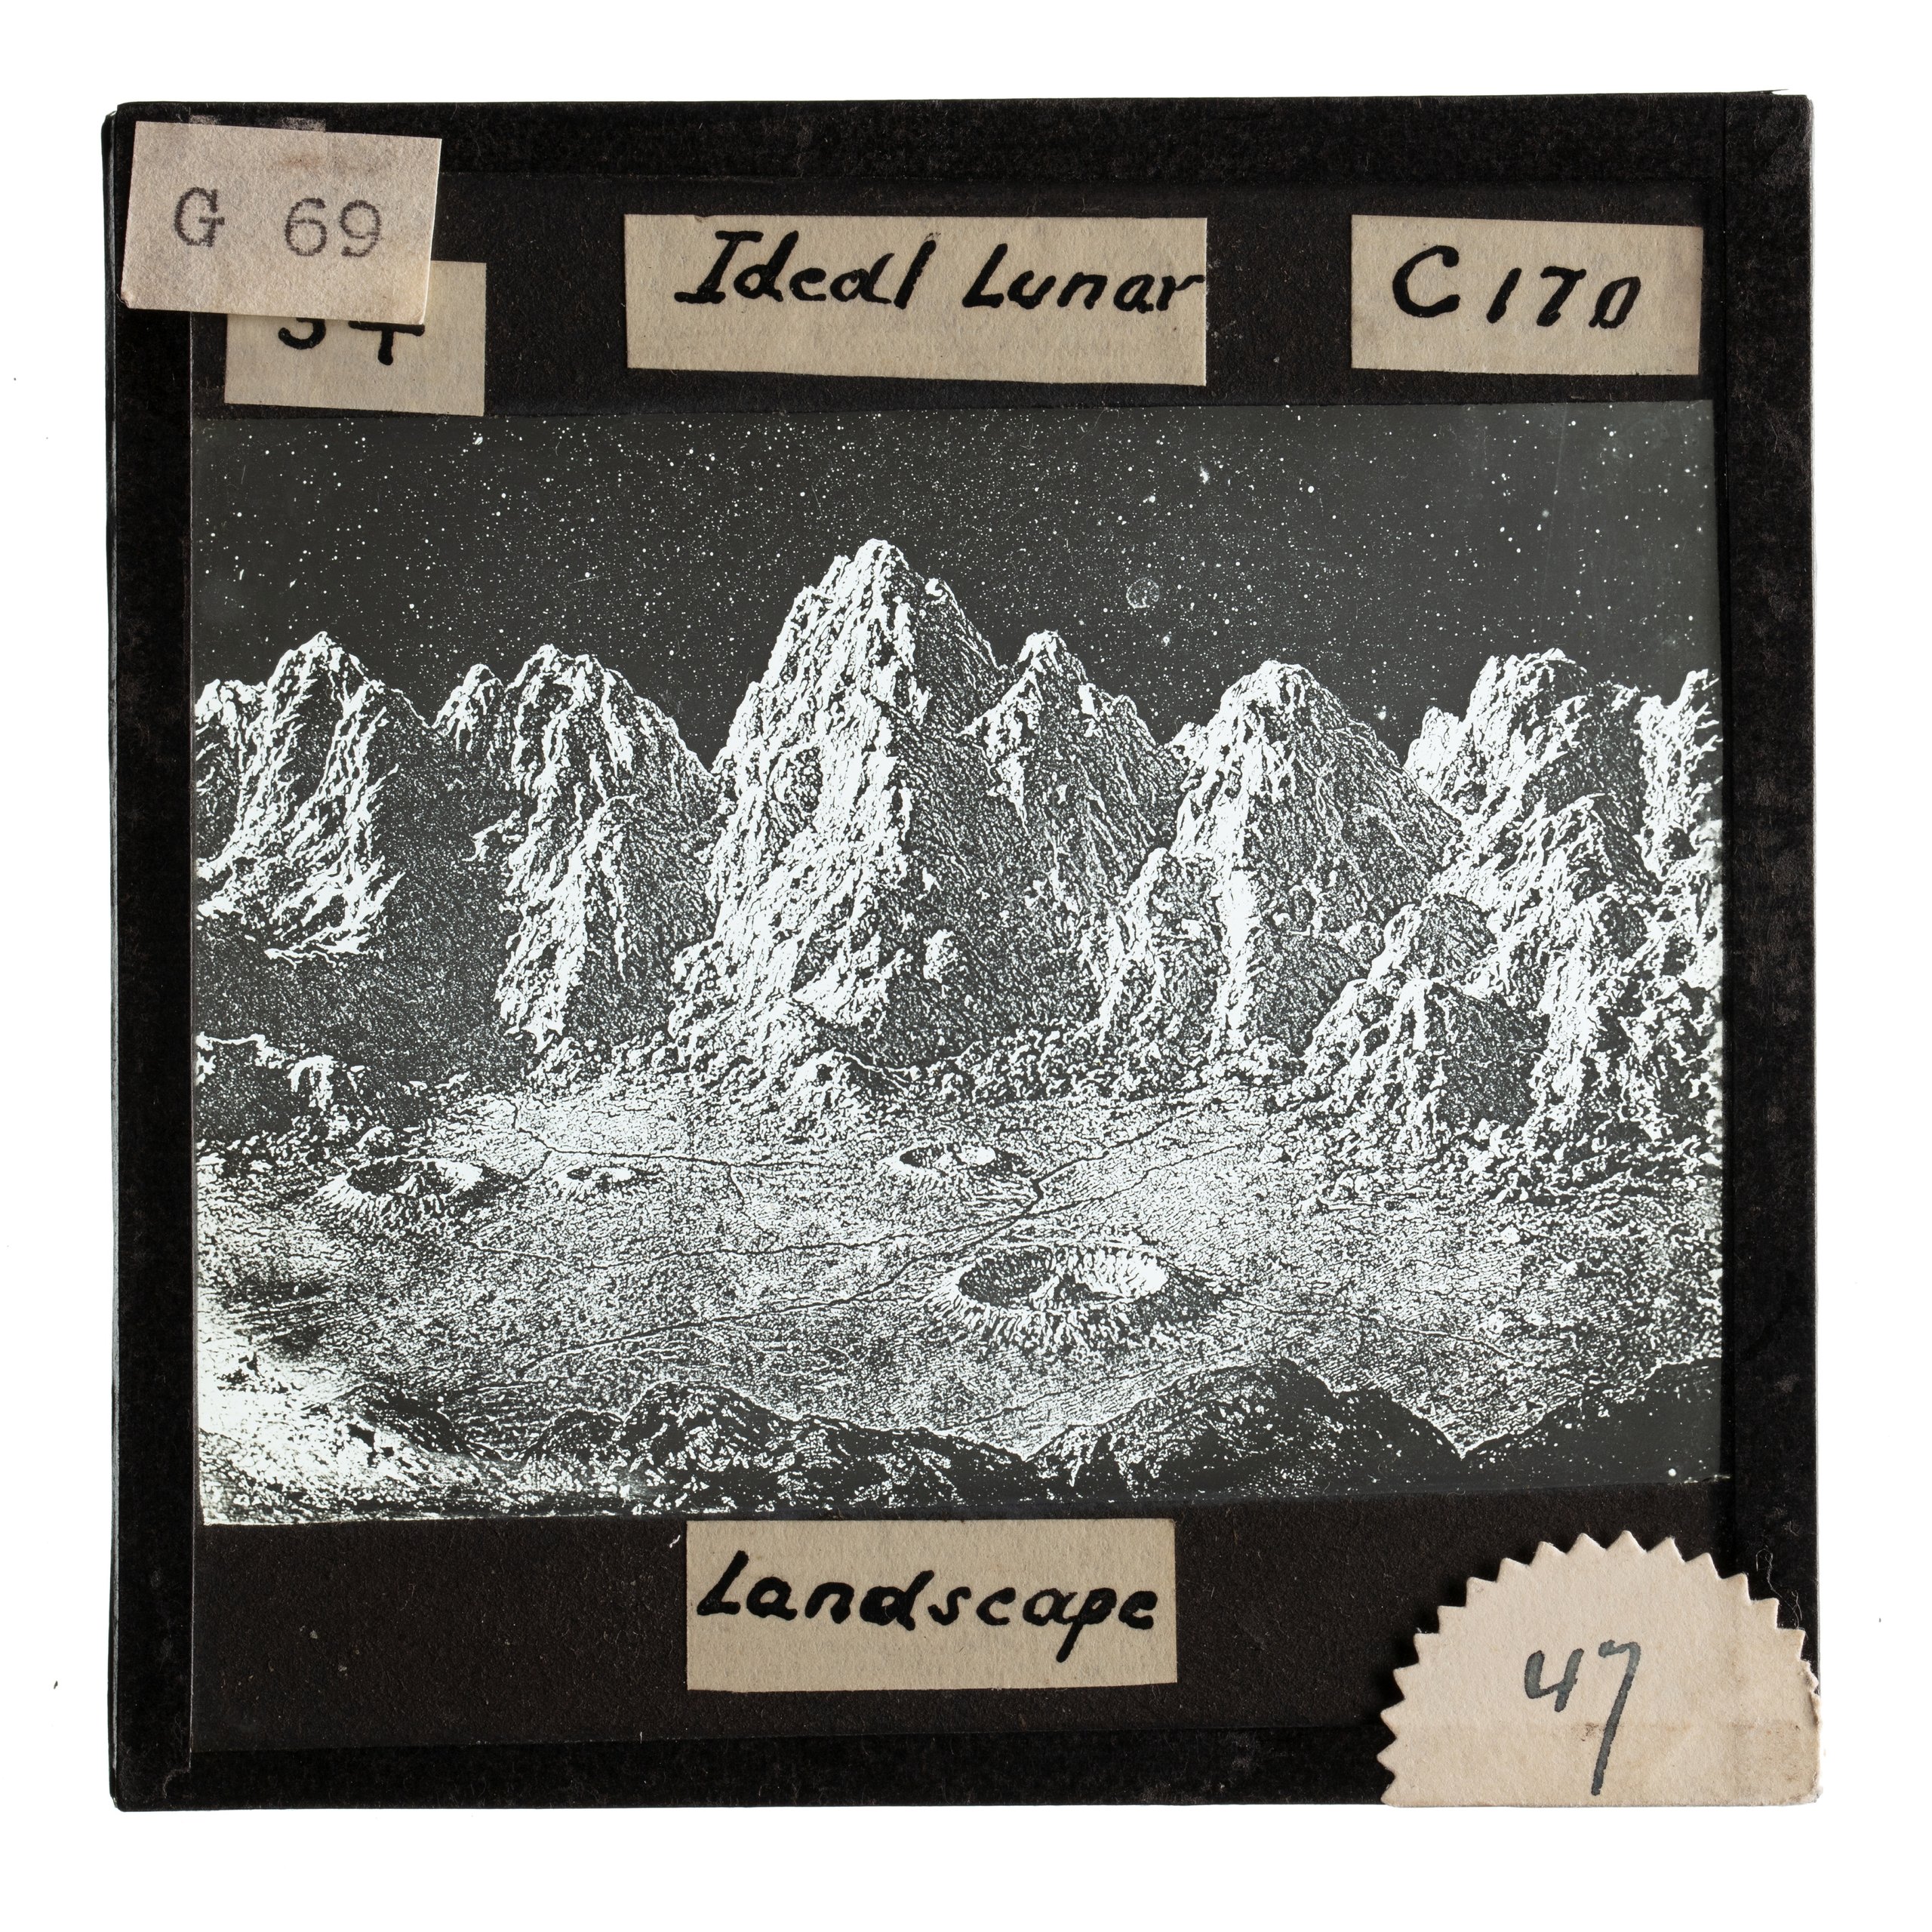 'Ideal lunar landscape' lantern slide